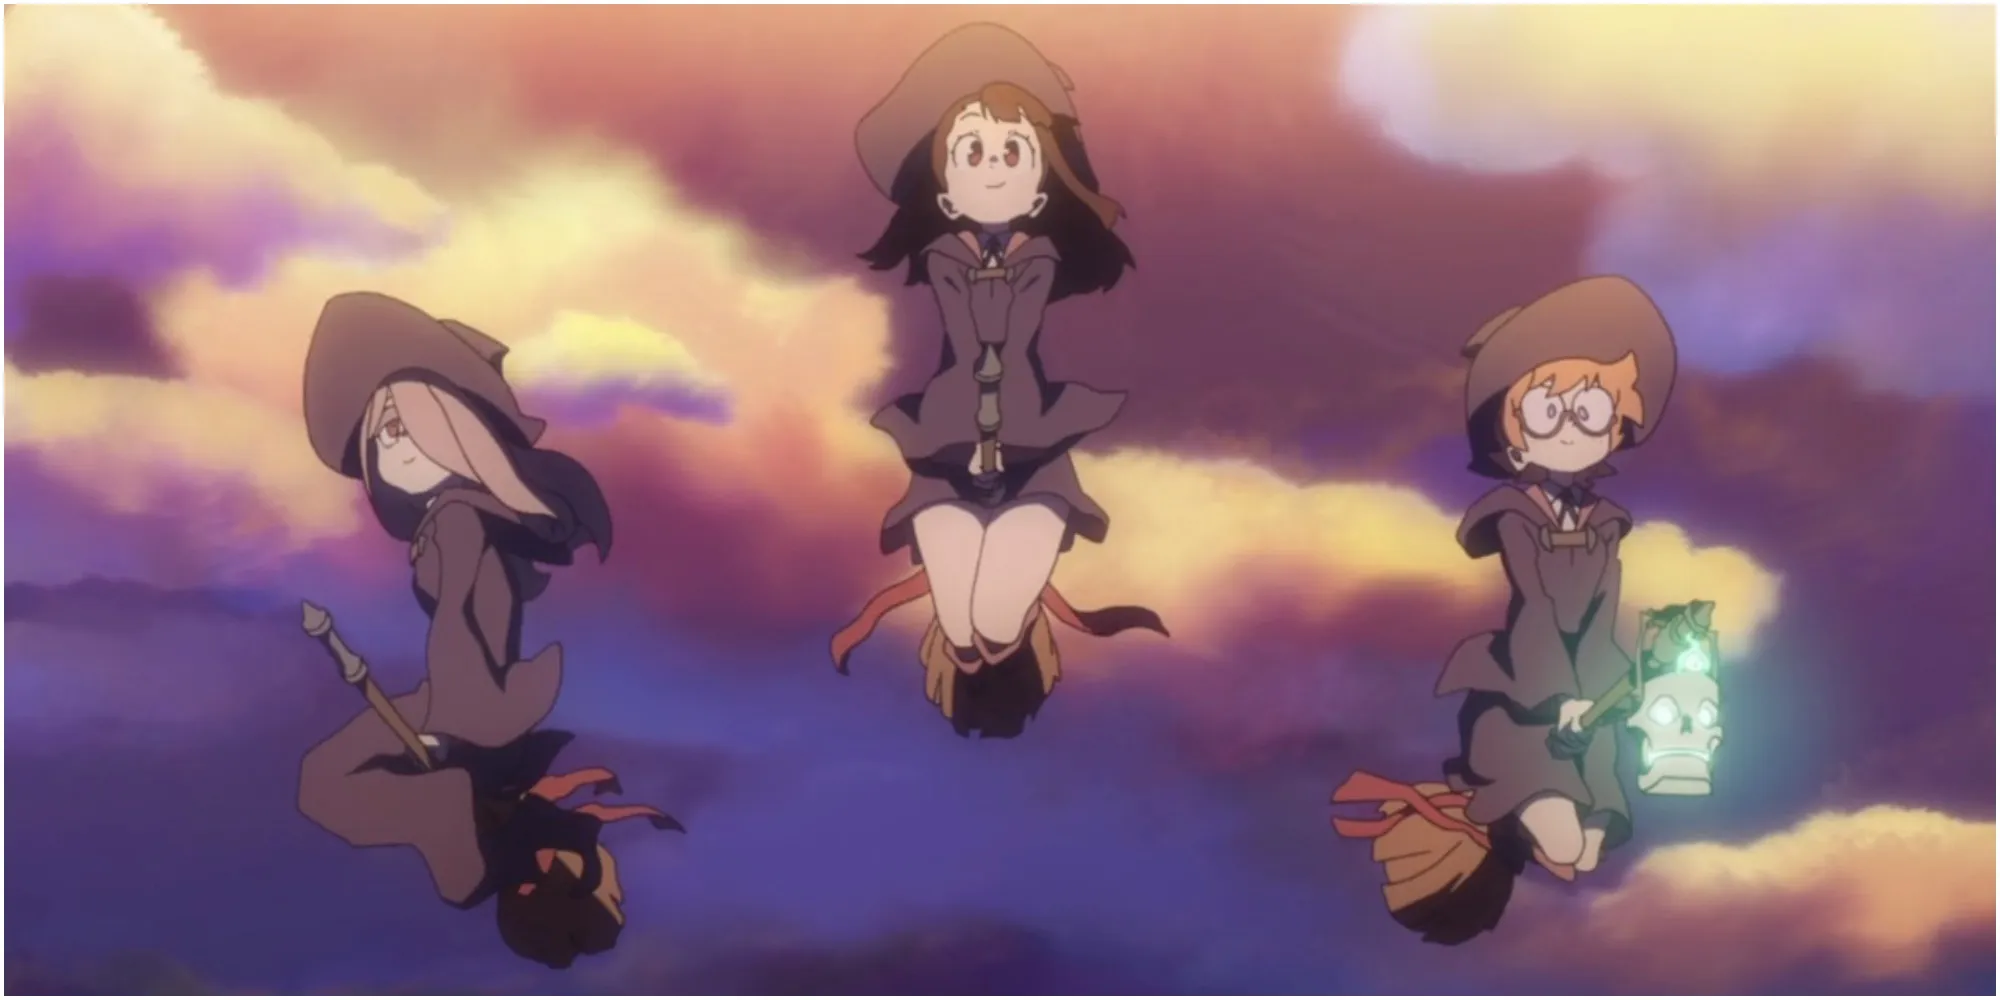 Image de Little Witch Academia Akko avec des amis qui volent